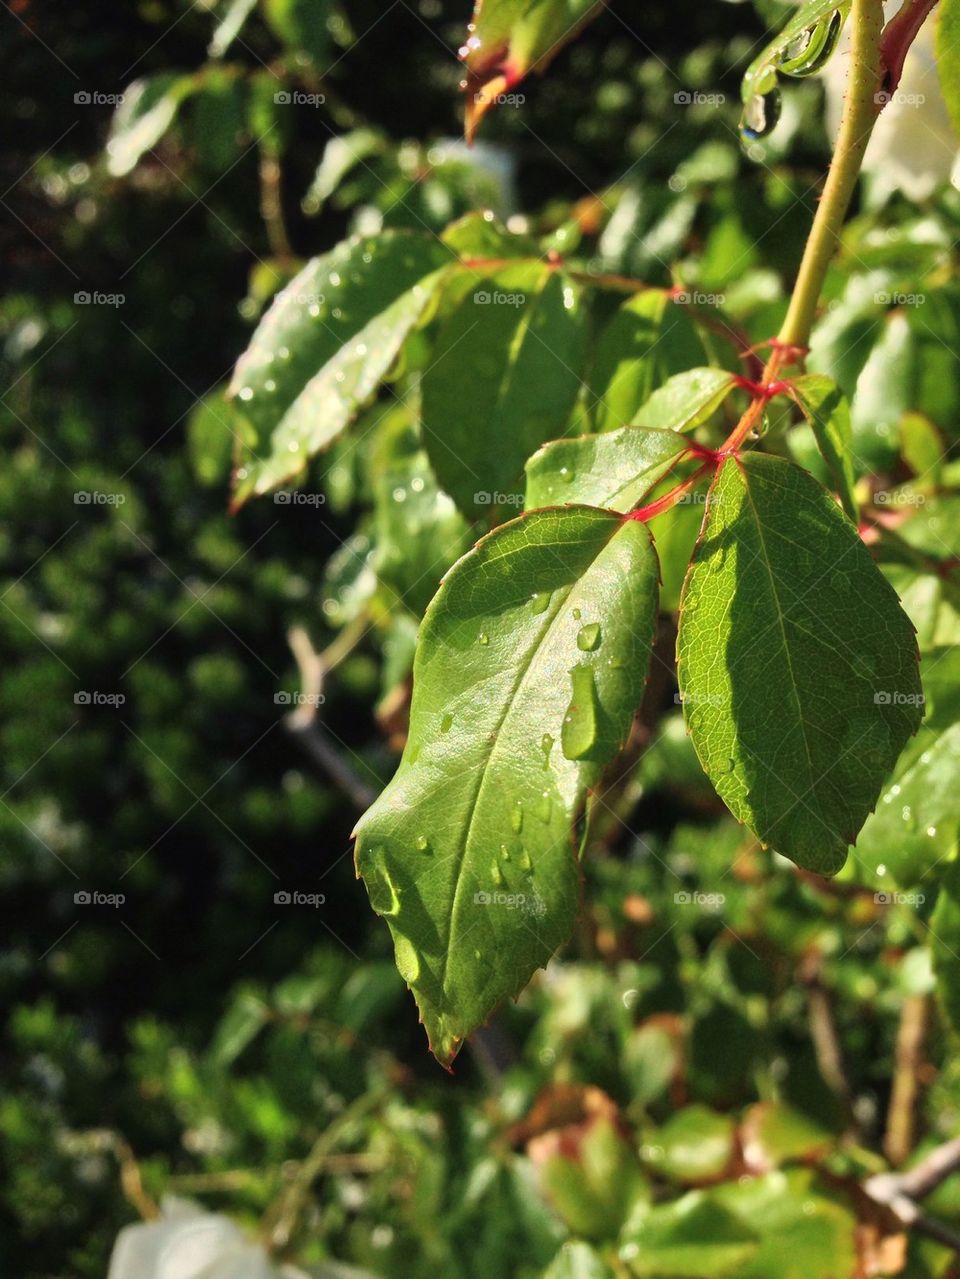 Leaf dew